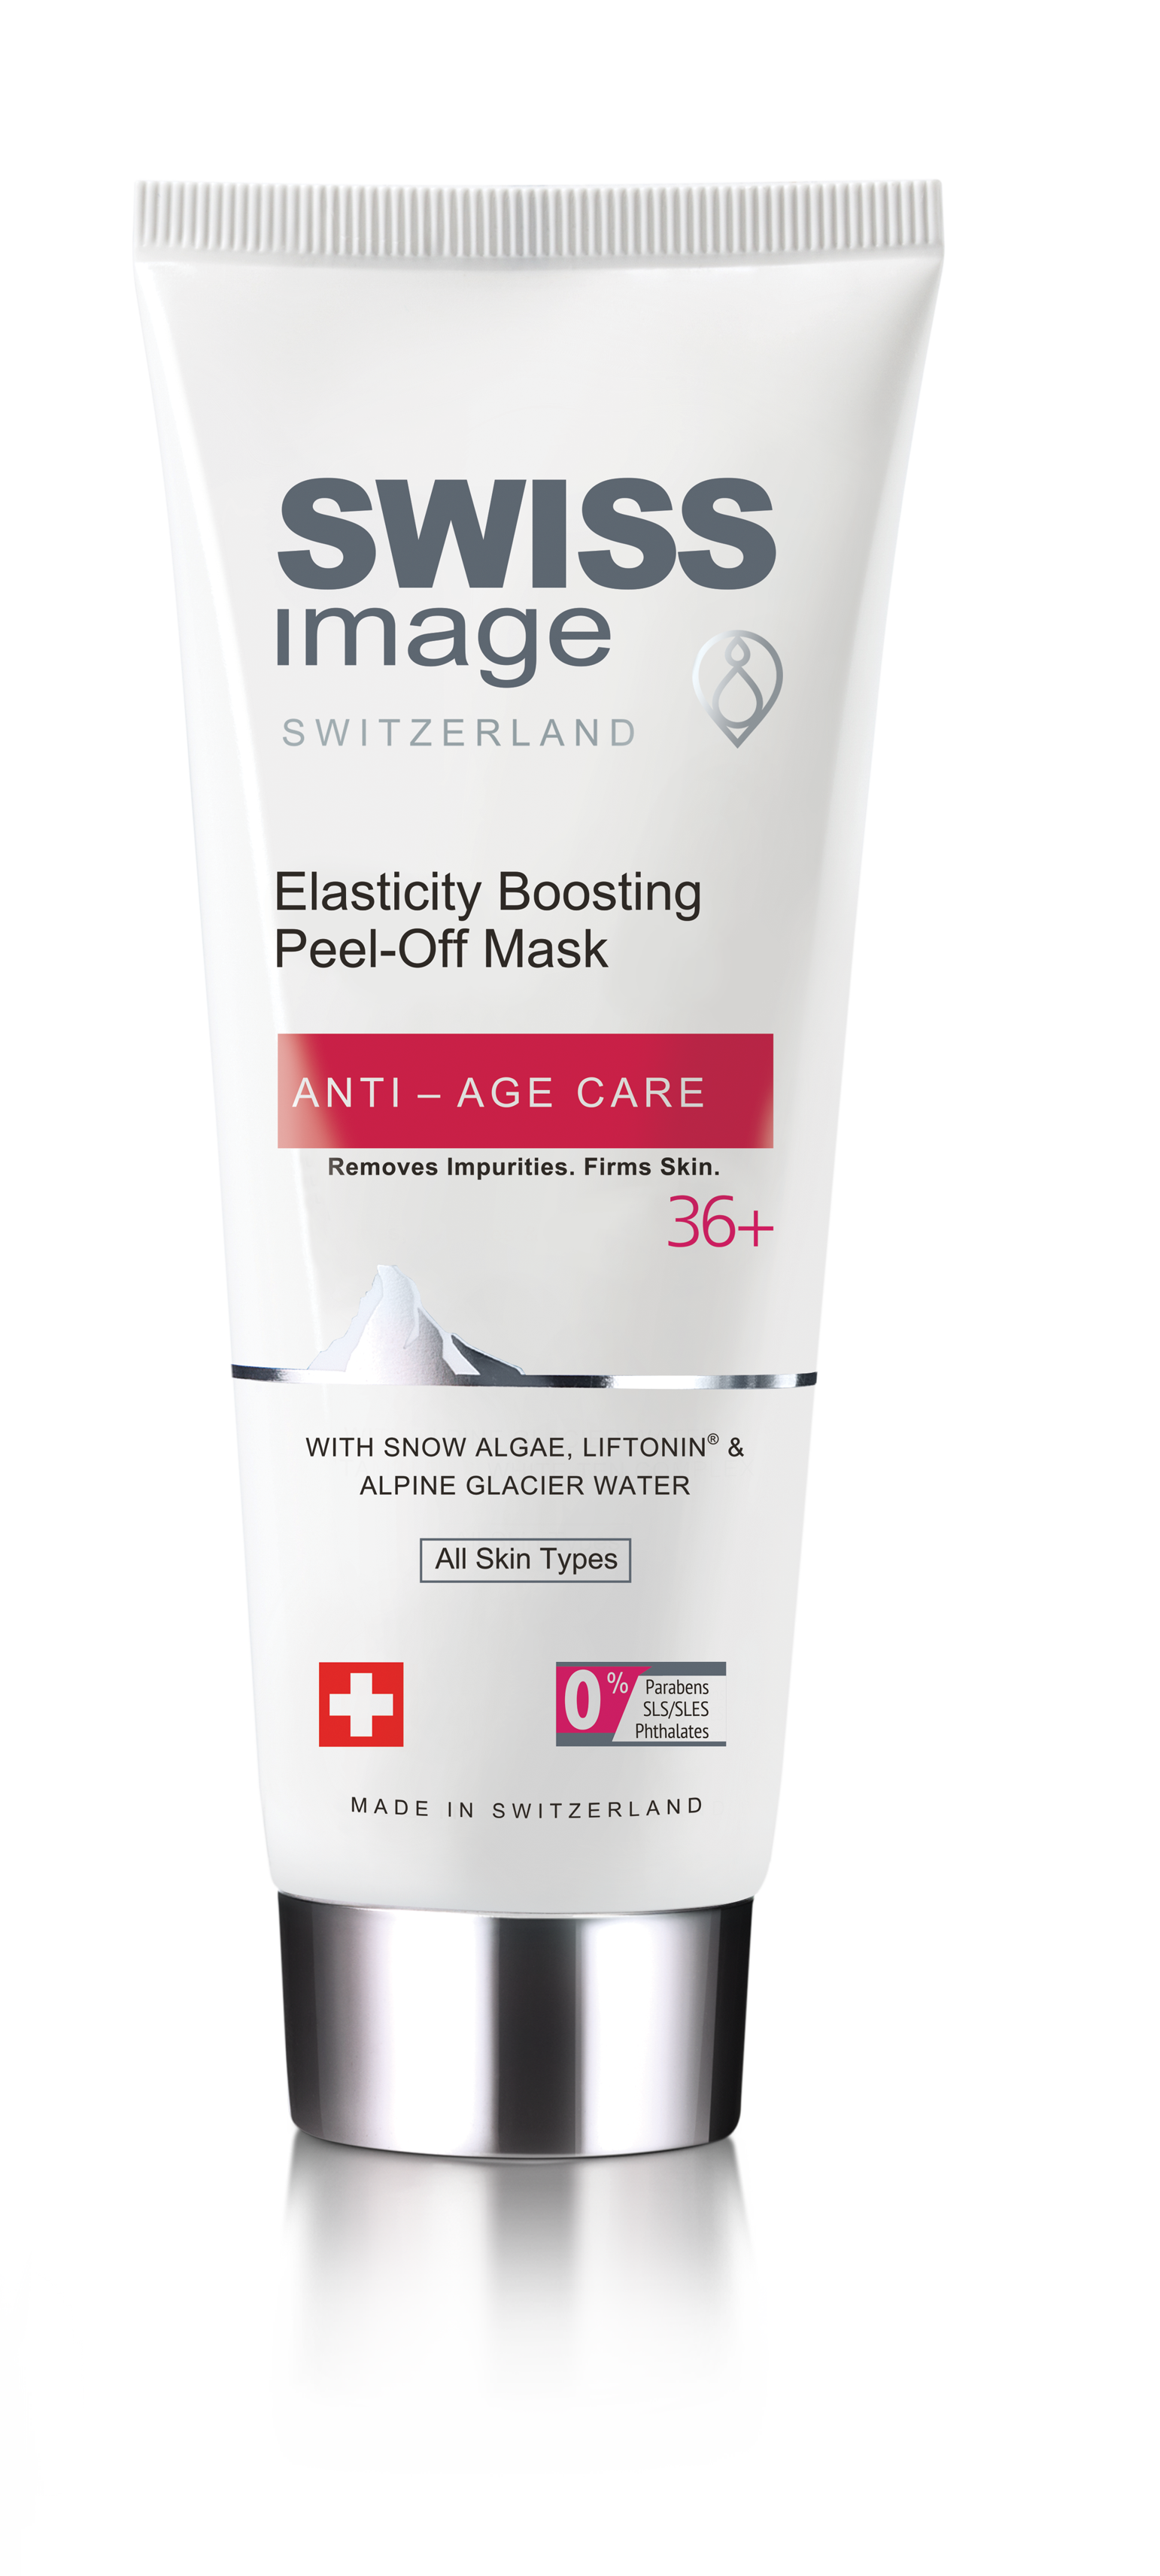 ماسک لایه بردار سوئیس ایمیج